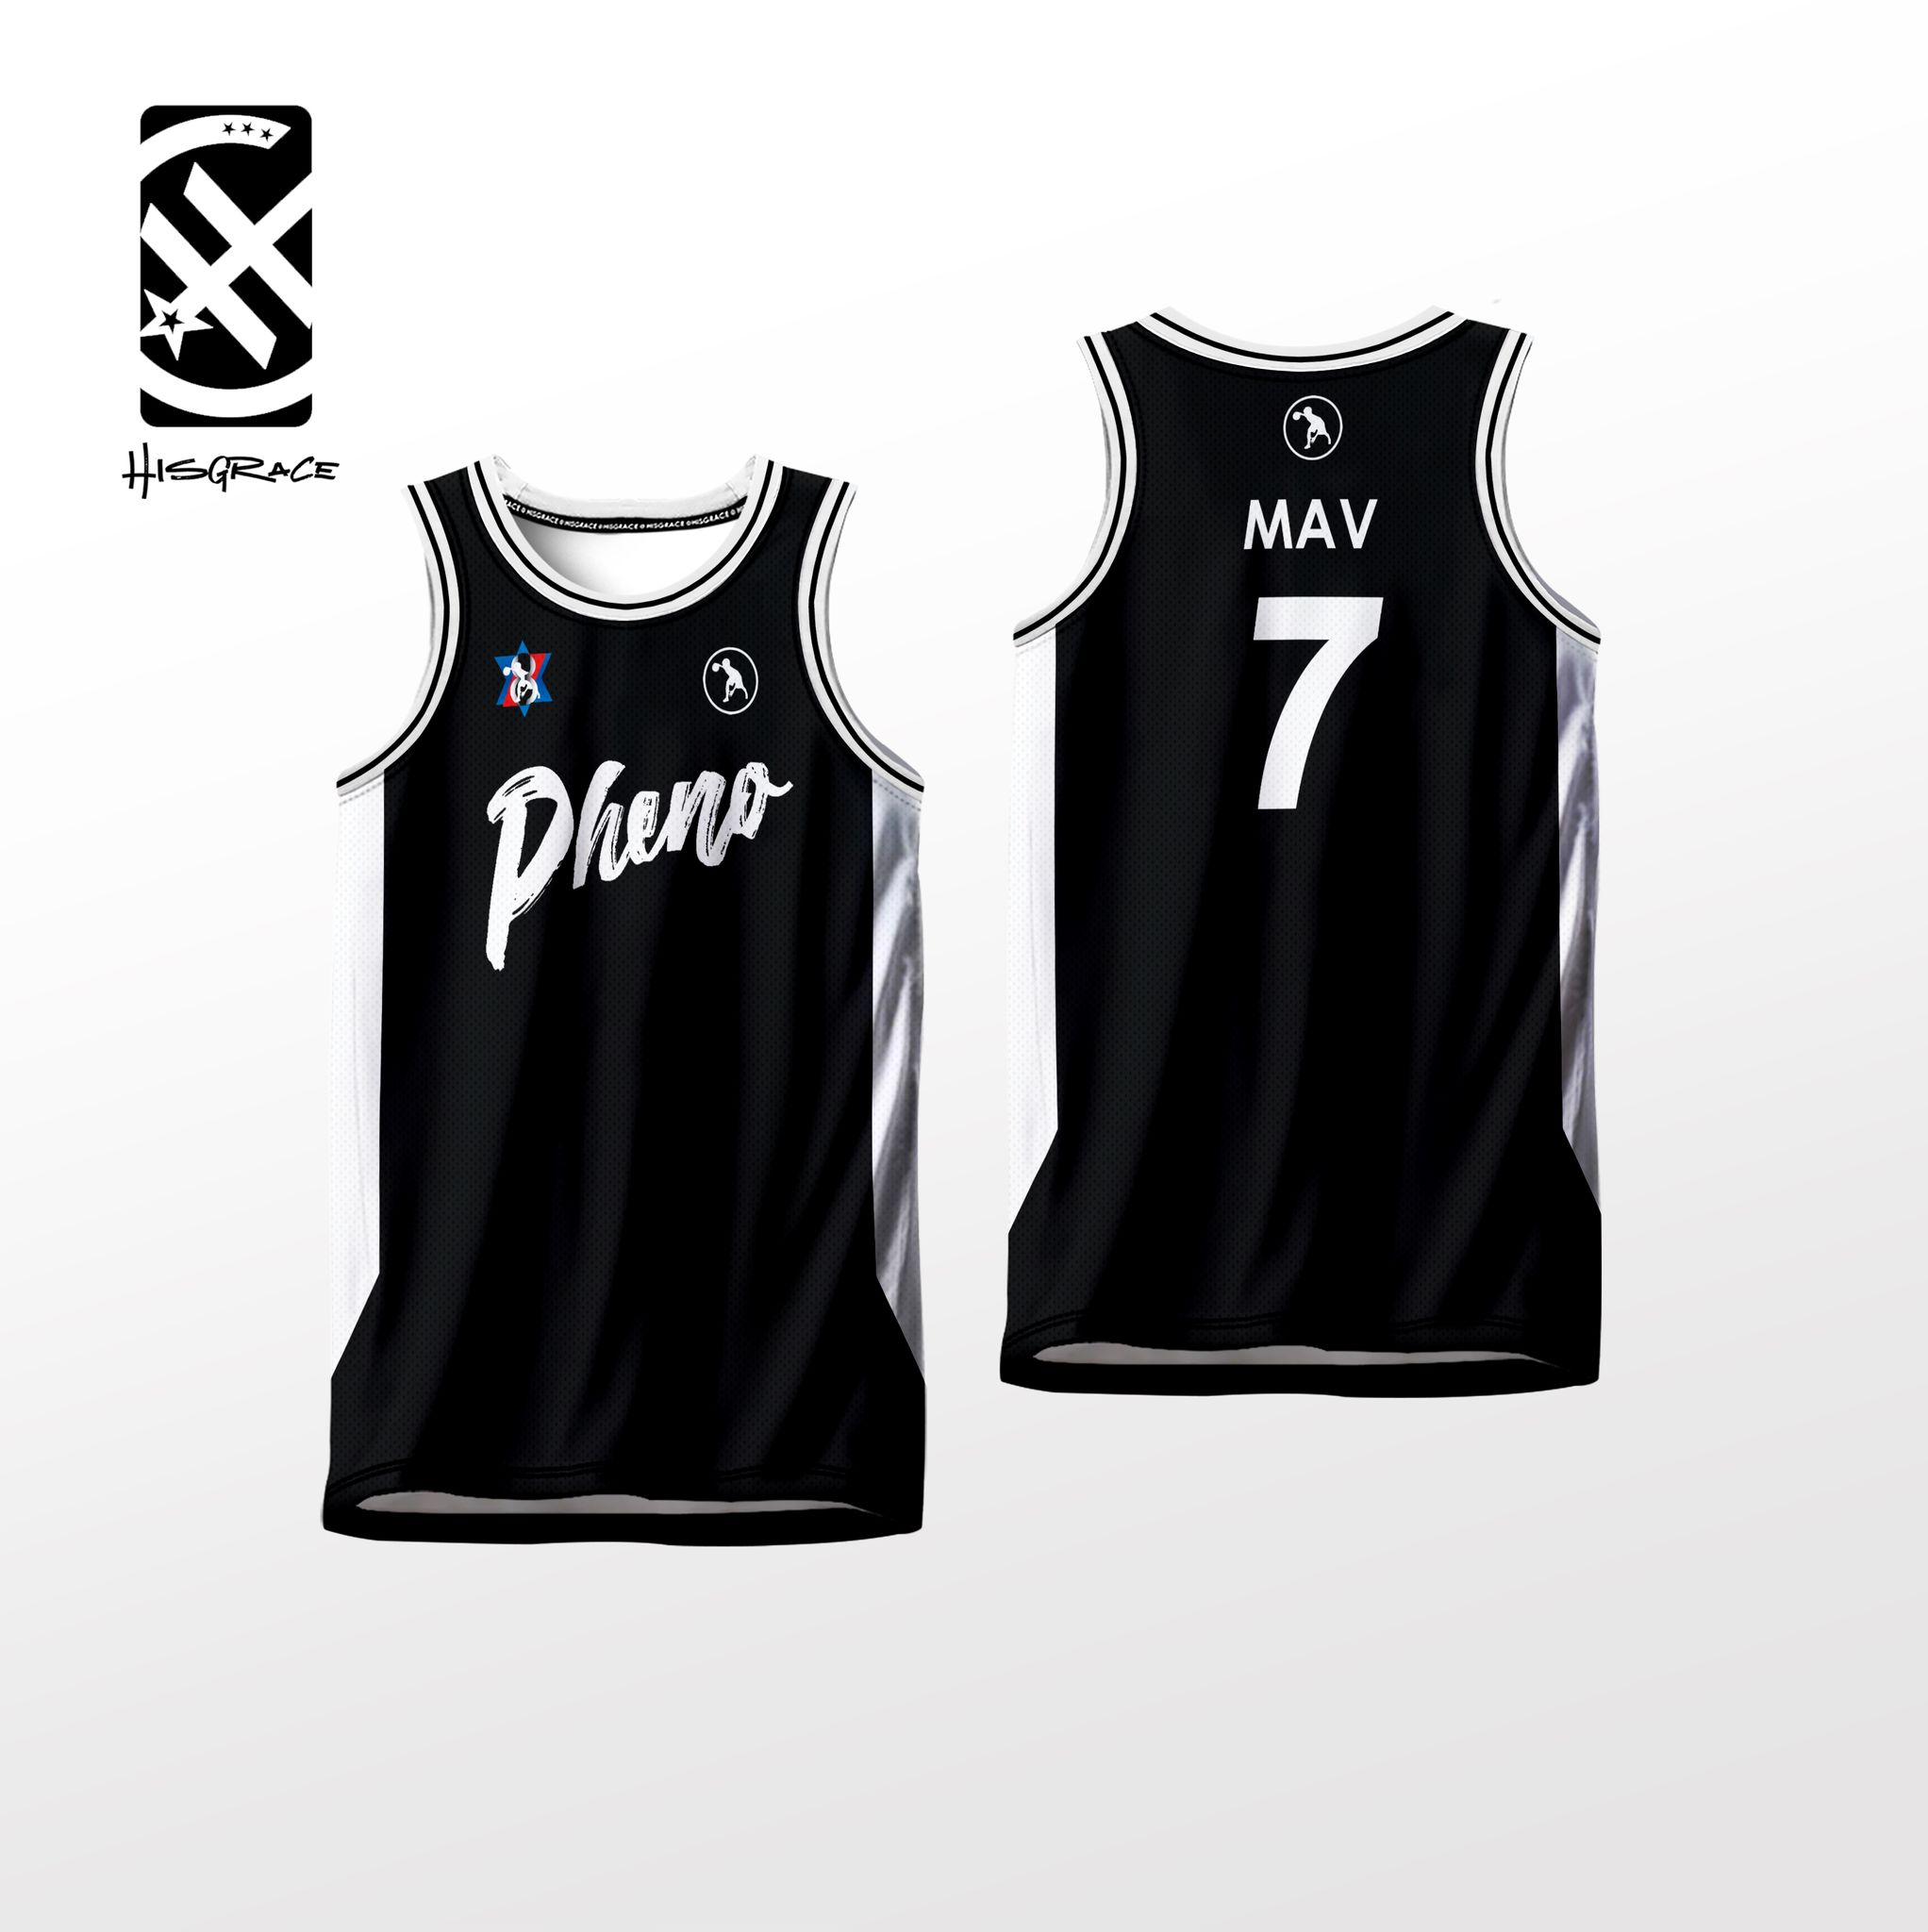 Mavs Phenomenal Basketball Jersey to New Jersey Design 